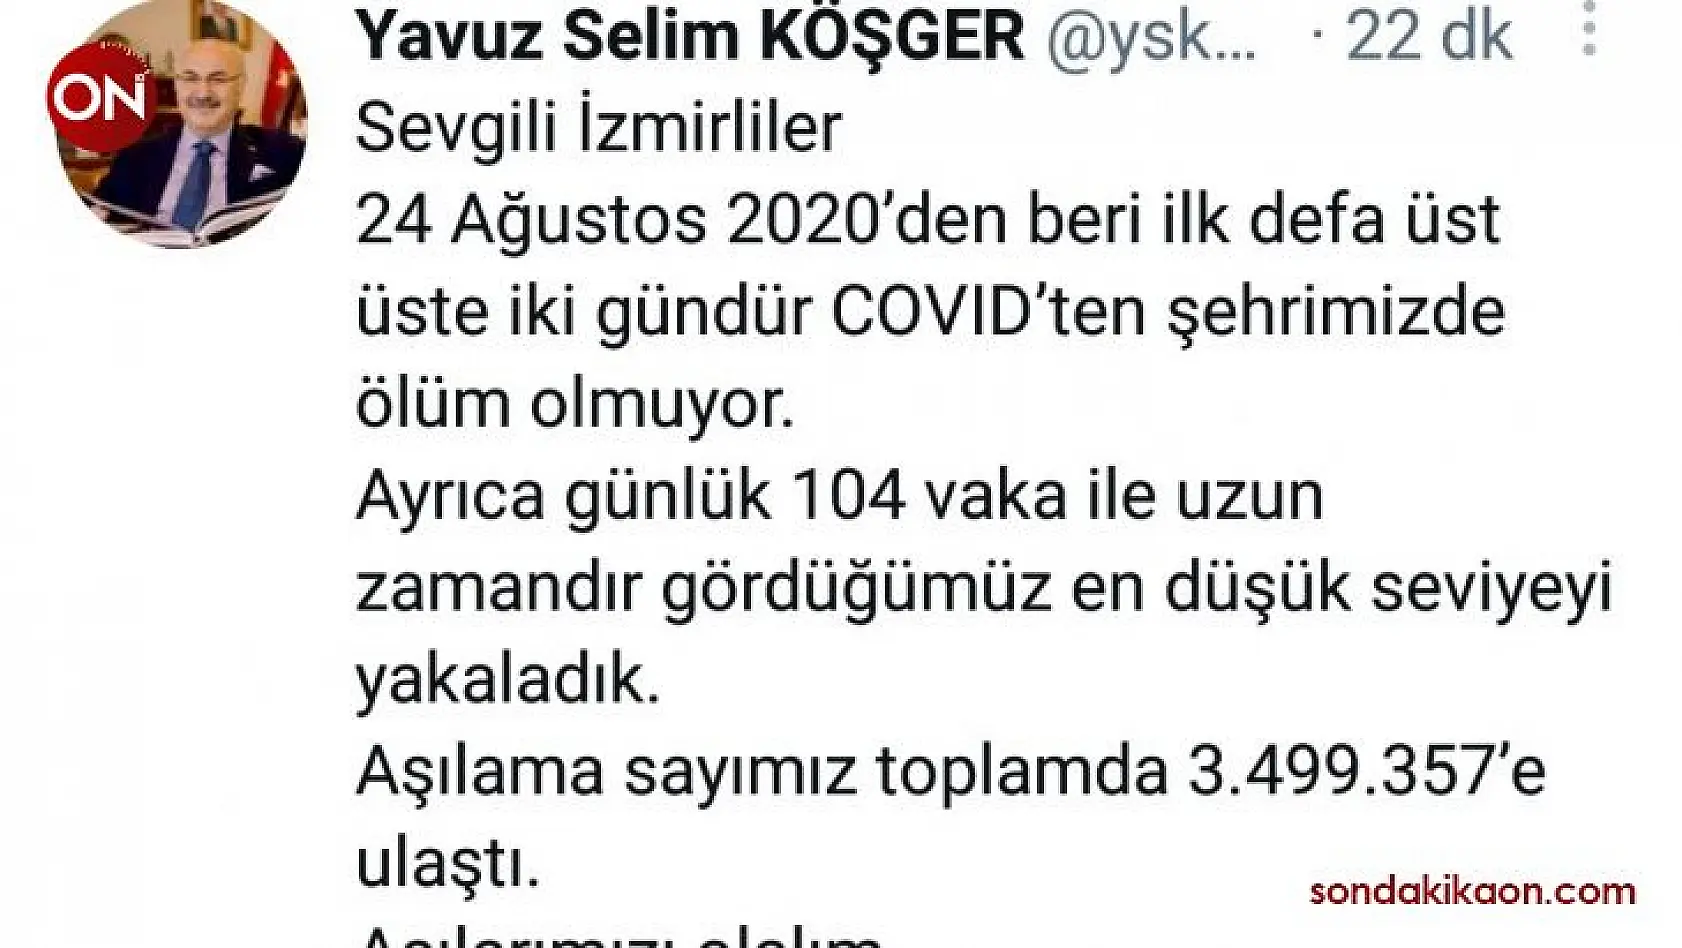 İzmir Valisi Köşger: 'Üst üste iki gündür COVID'ten şehrimizde ölüm olmuyor'